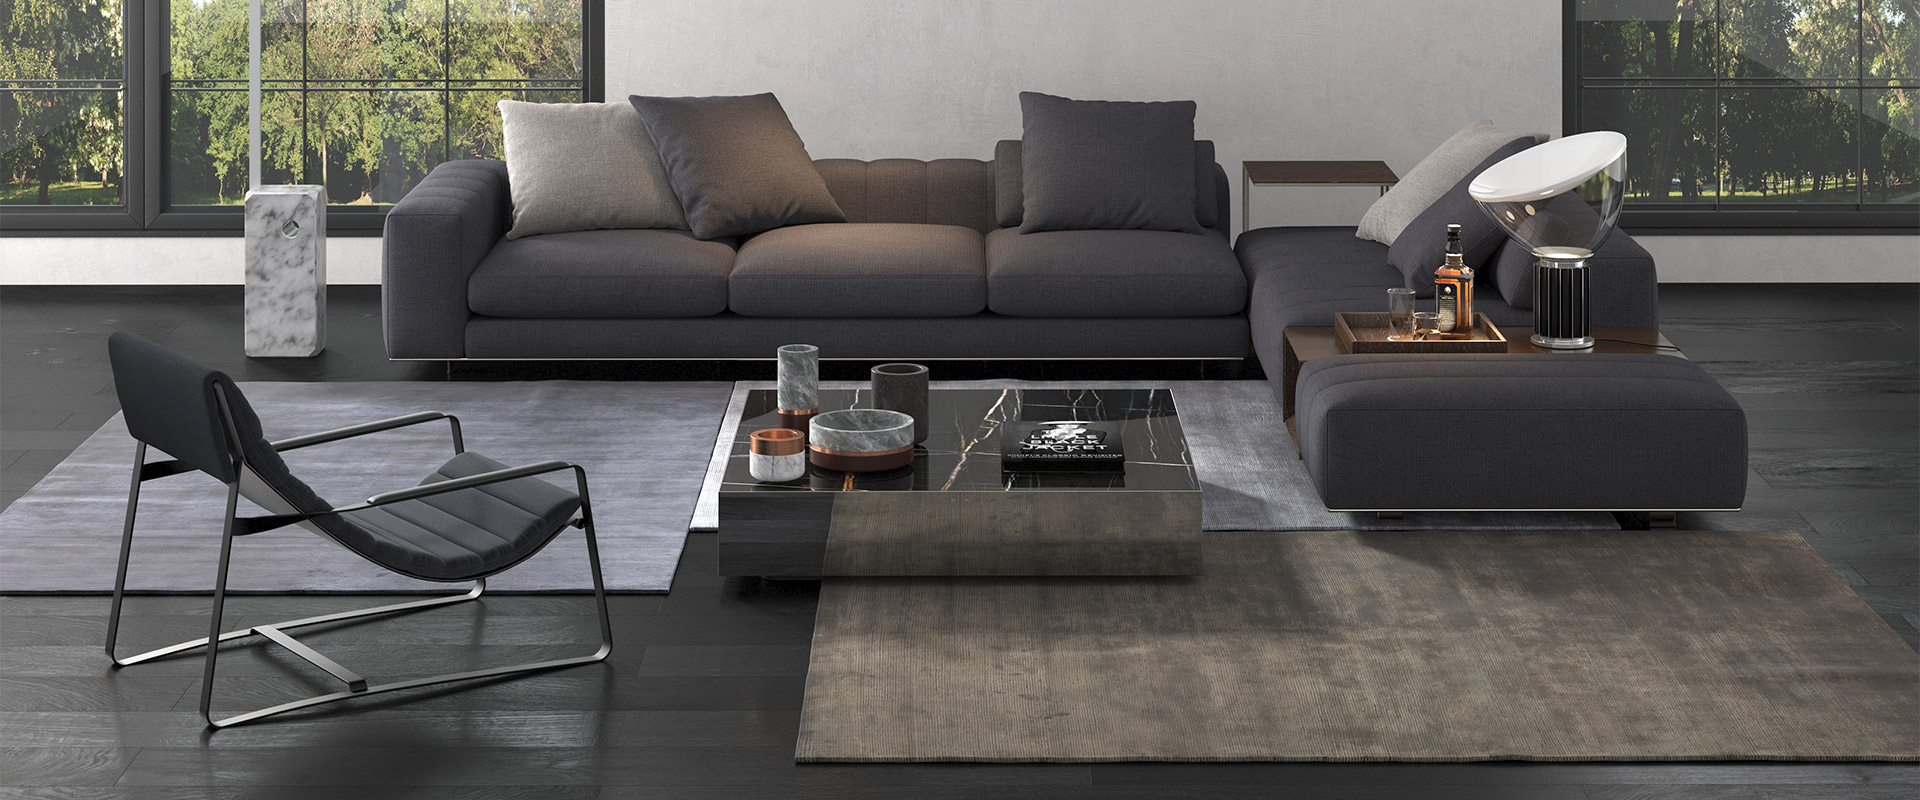 Modernes Wohnzimmer mit großem Fensterblick auf einen Garten, L-förmigem dunkelgrauen Sofa, schwarzem Couchtisch auf einem Teppich, einer Designer-Liege und dekorativen Accessoires auf Tischen und Boden.